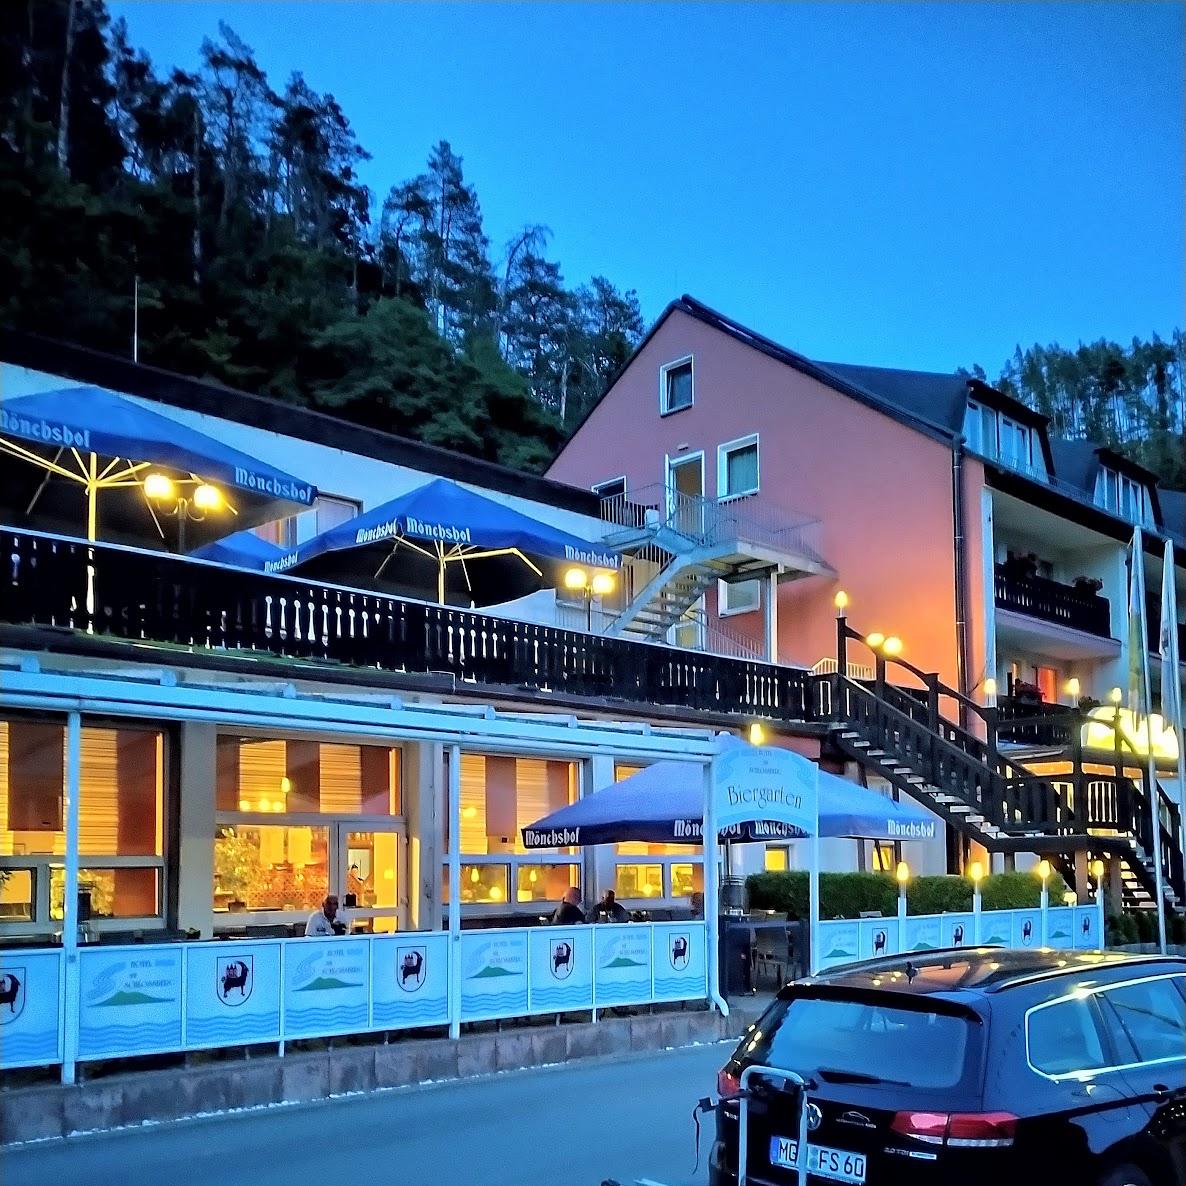 Restaurant "Hotel Am Schlossberg" in Ziegenrück